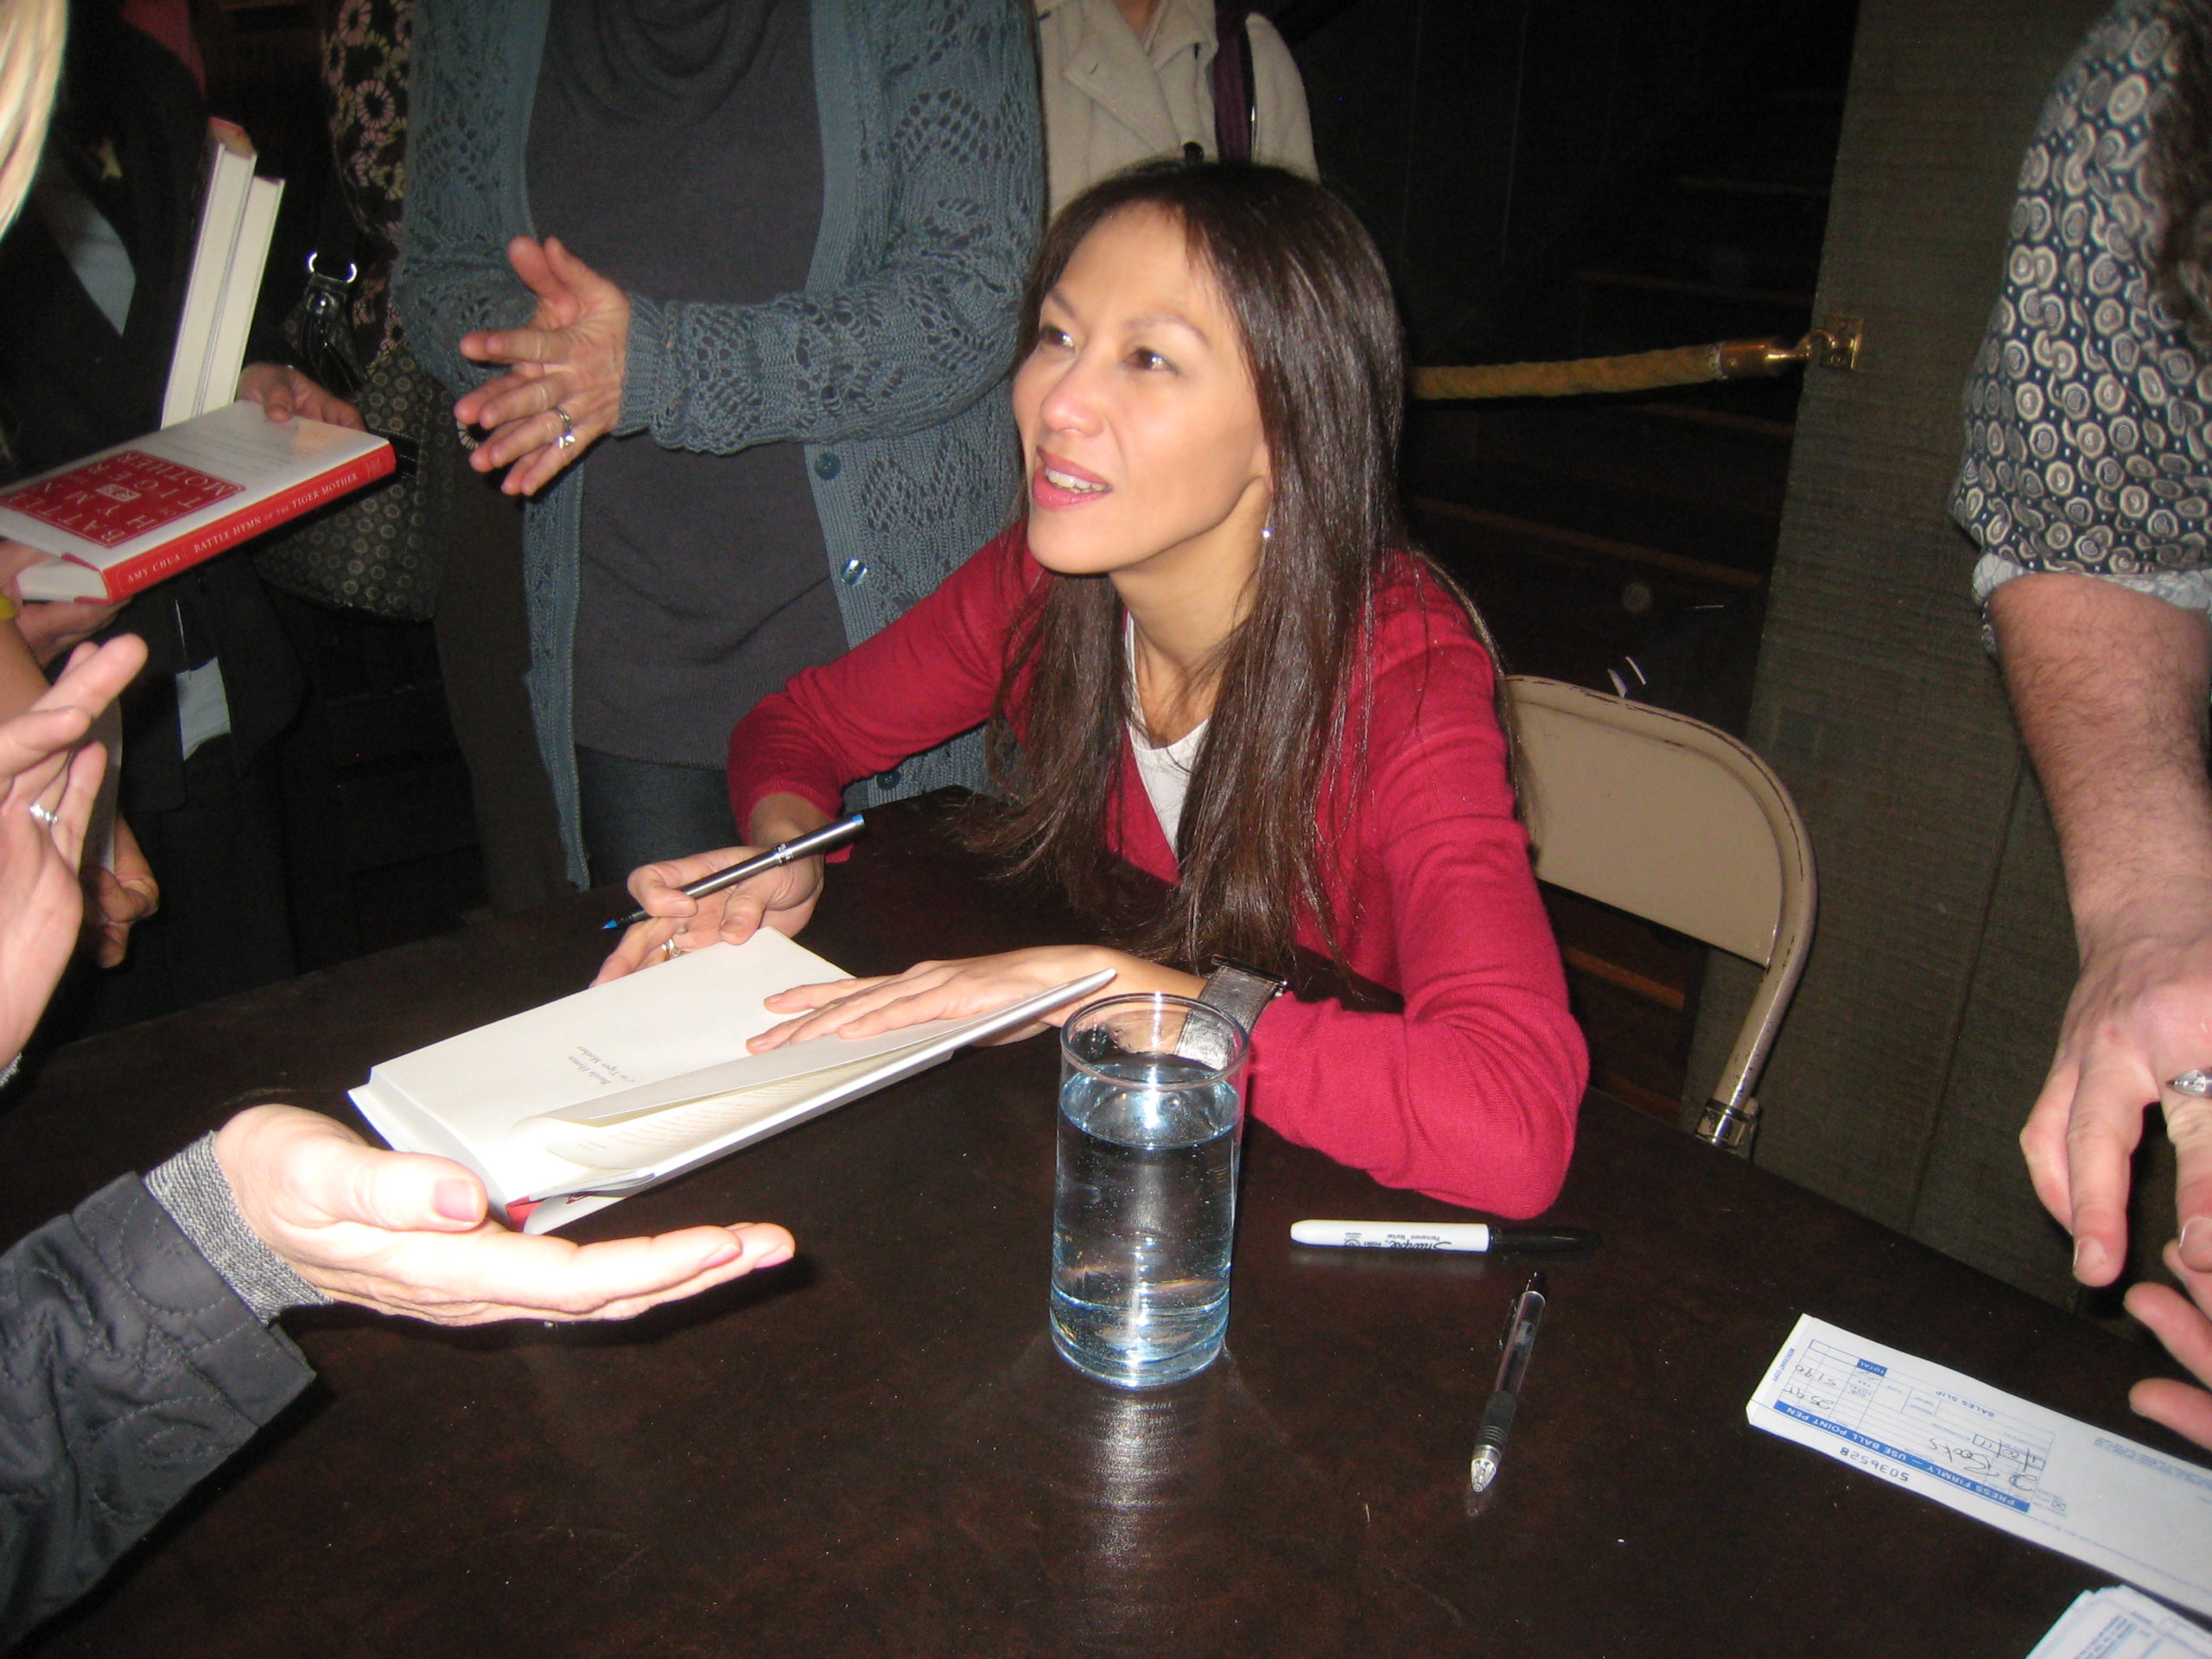 Amy Chua, author